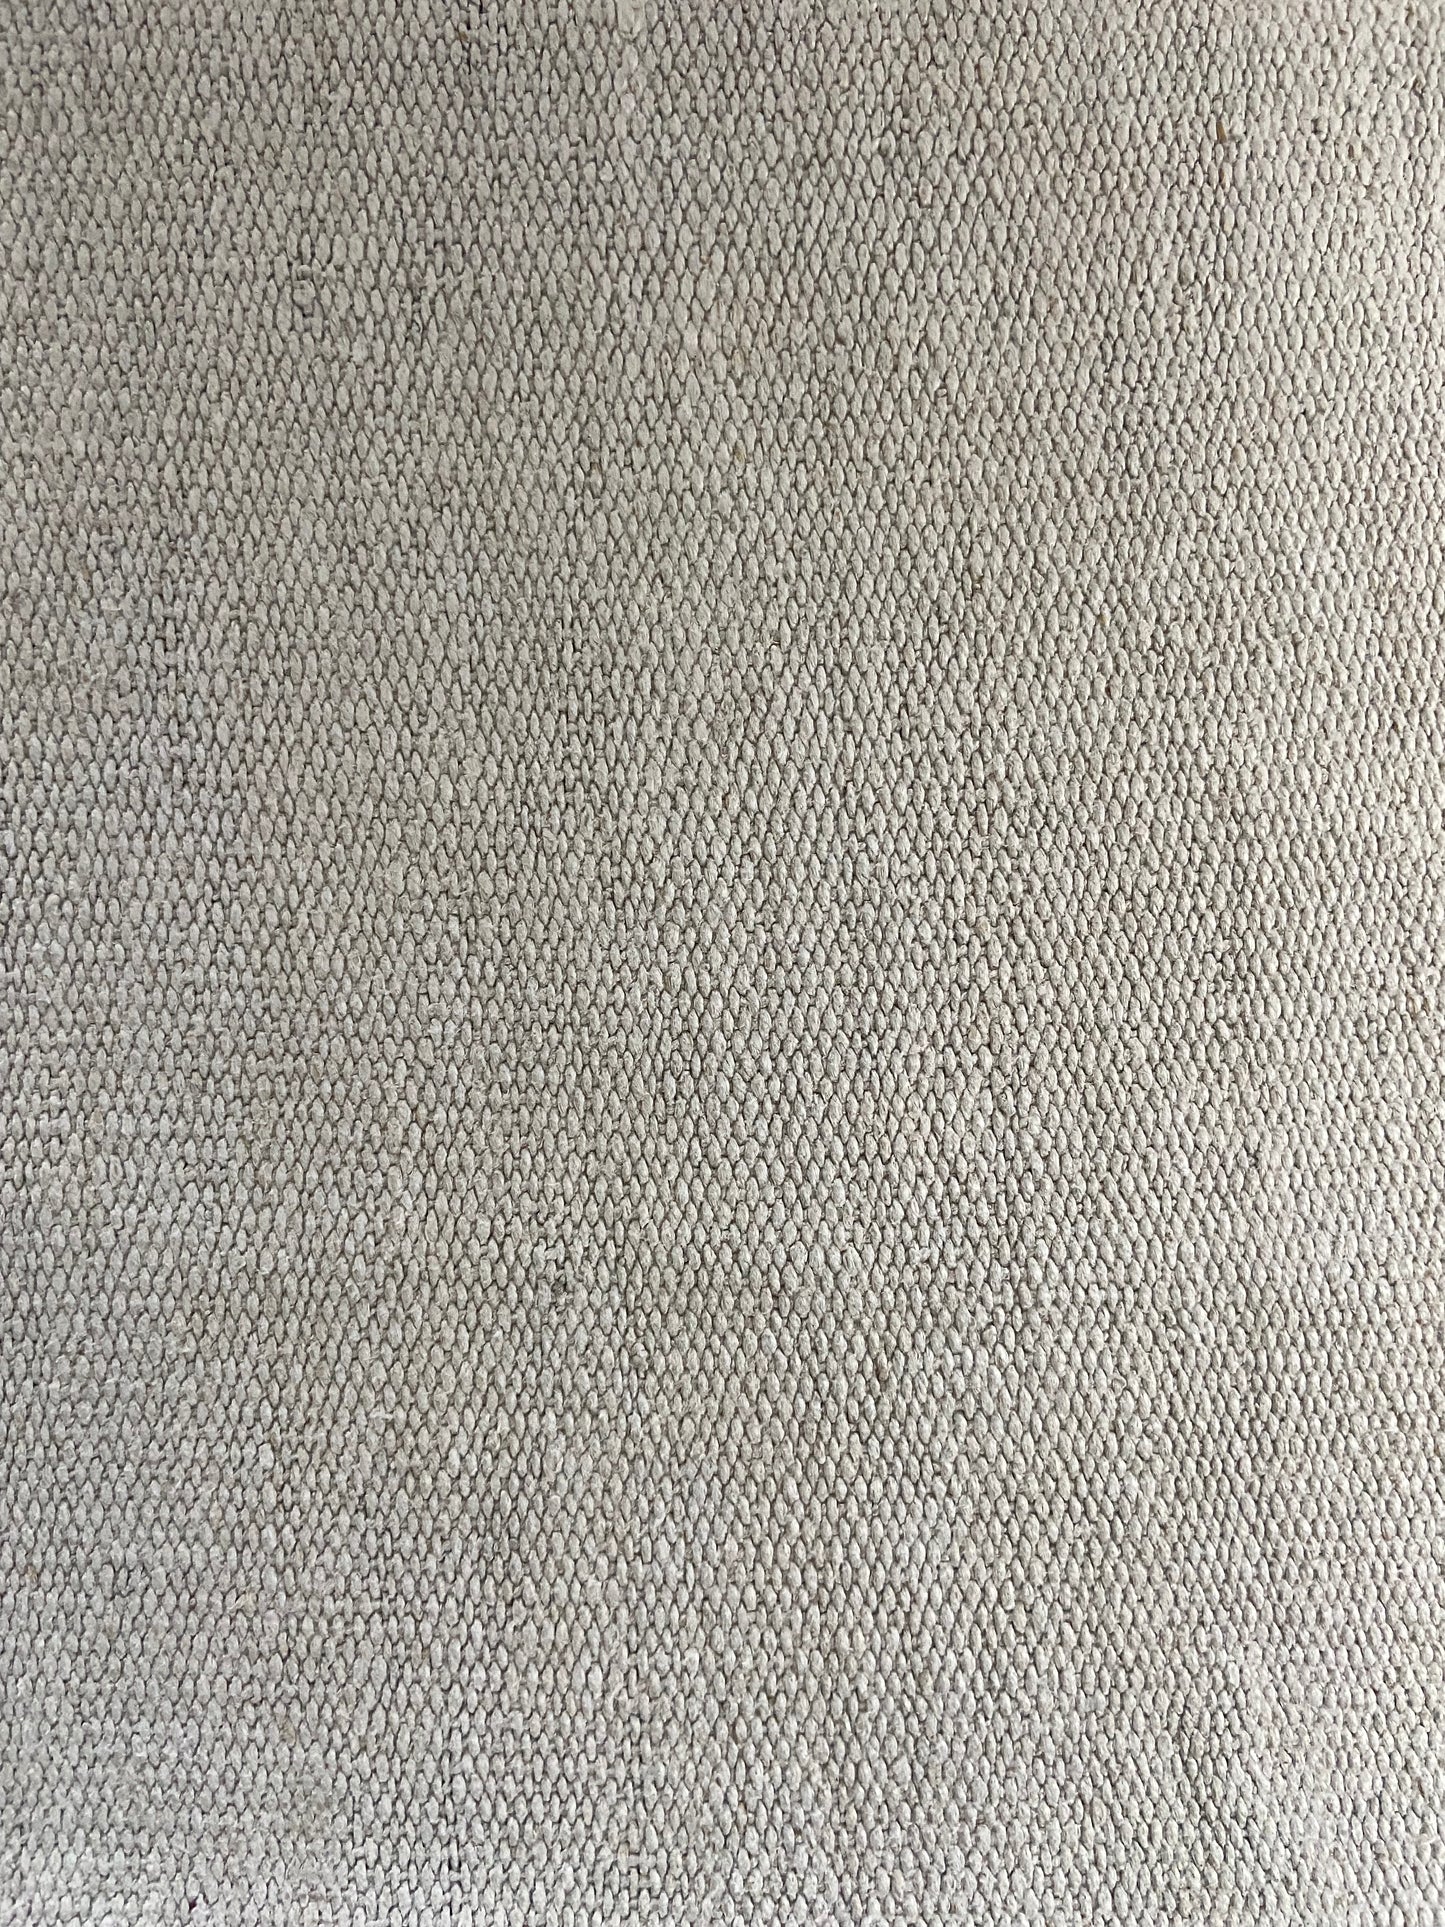 Hemp Carpet From Turkey 1970´s / Tapete Turco de Cañamo